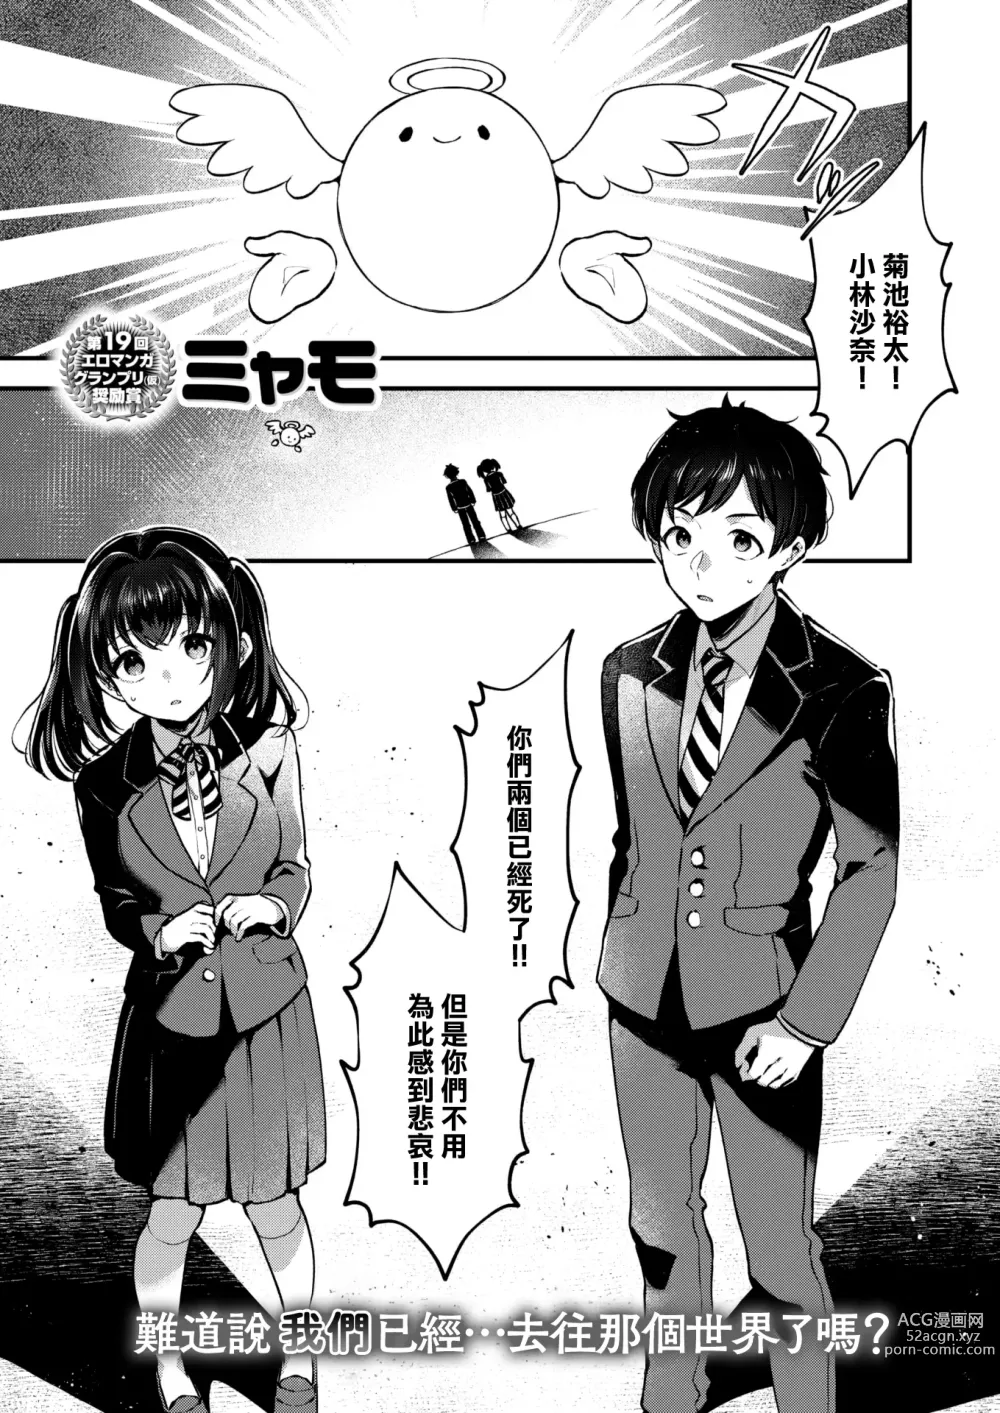 Page 2 of manga Changing!